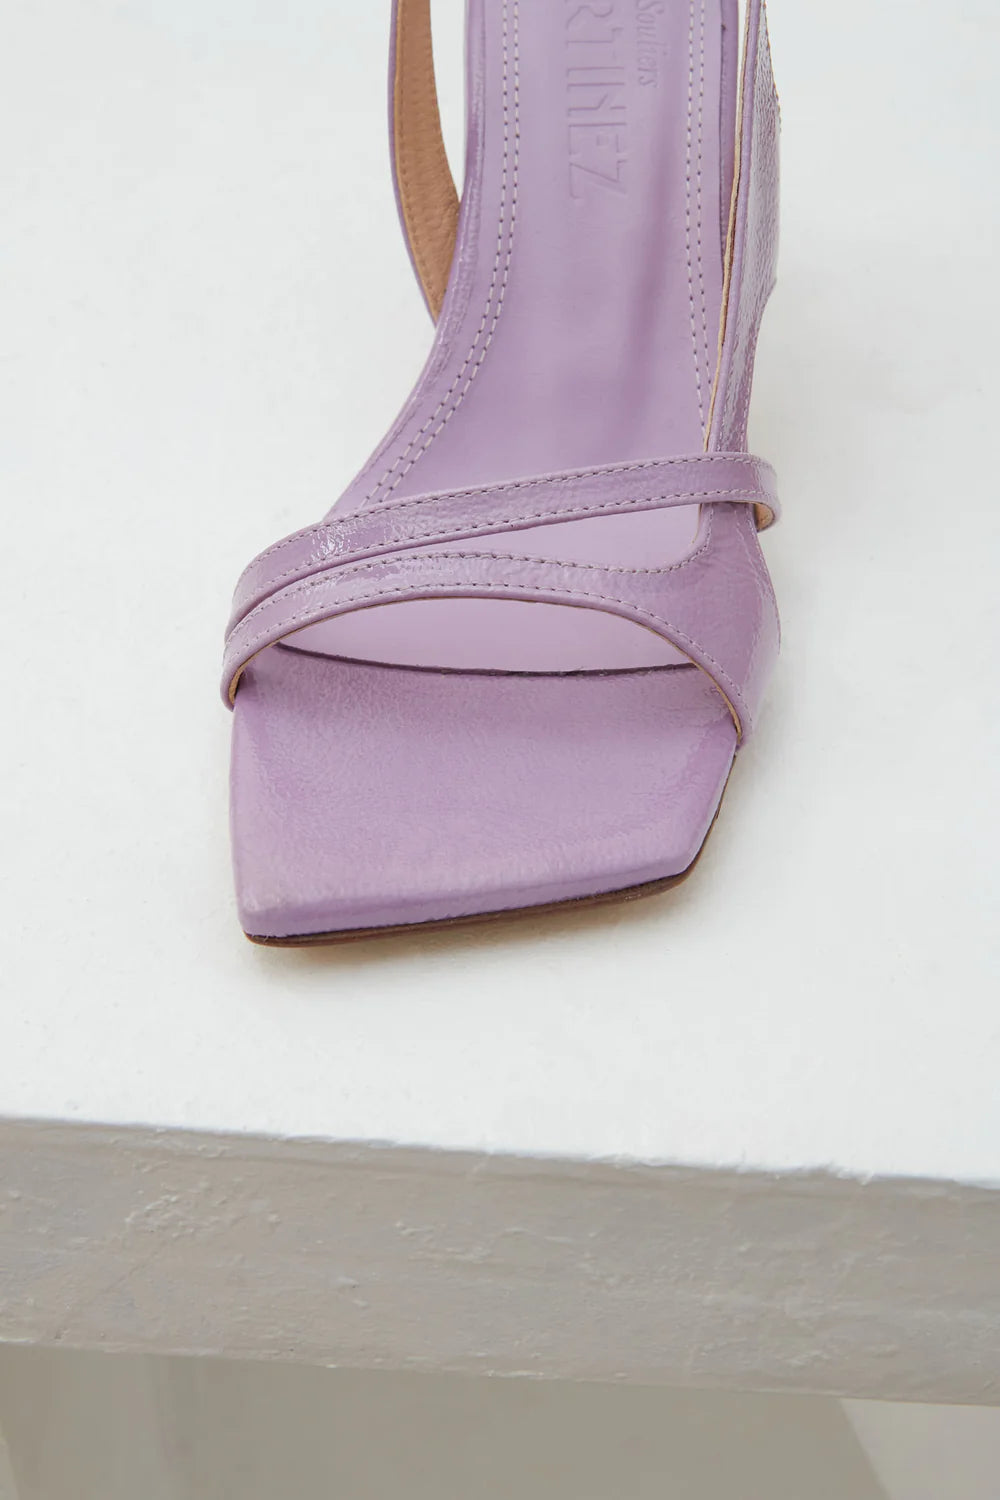 Souliers Martinez - Algar Sandal: Lavanda Patent Leather